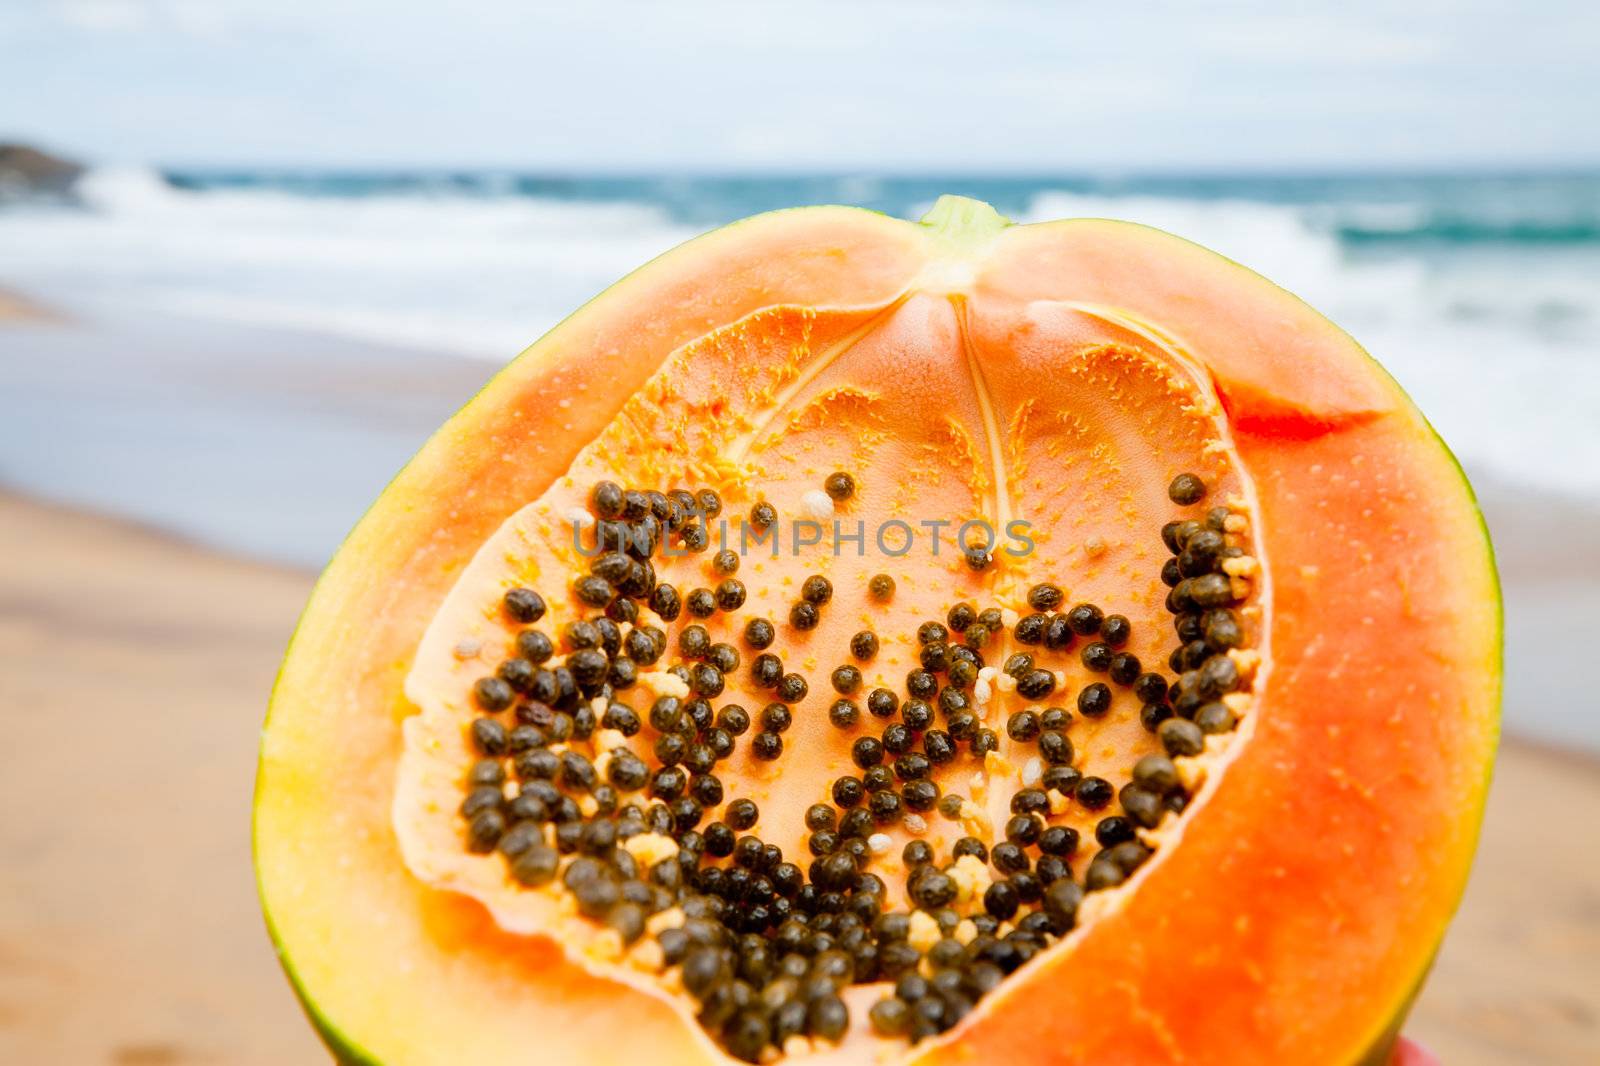 Ripe papaya cut in half on a beach